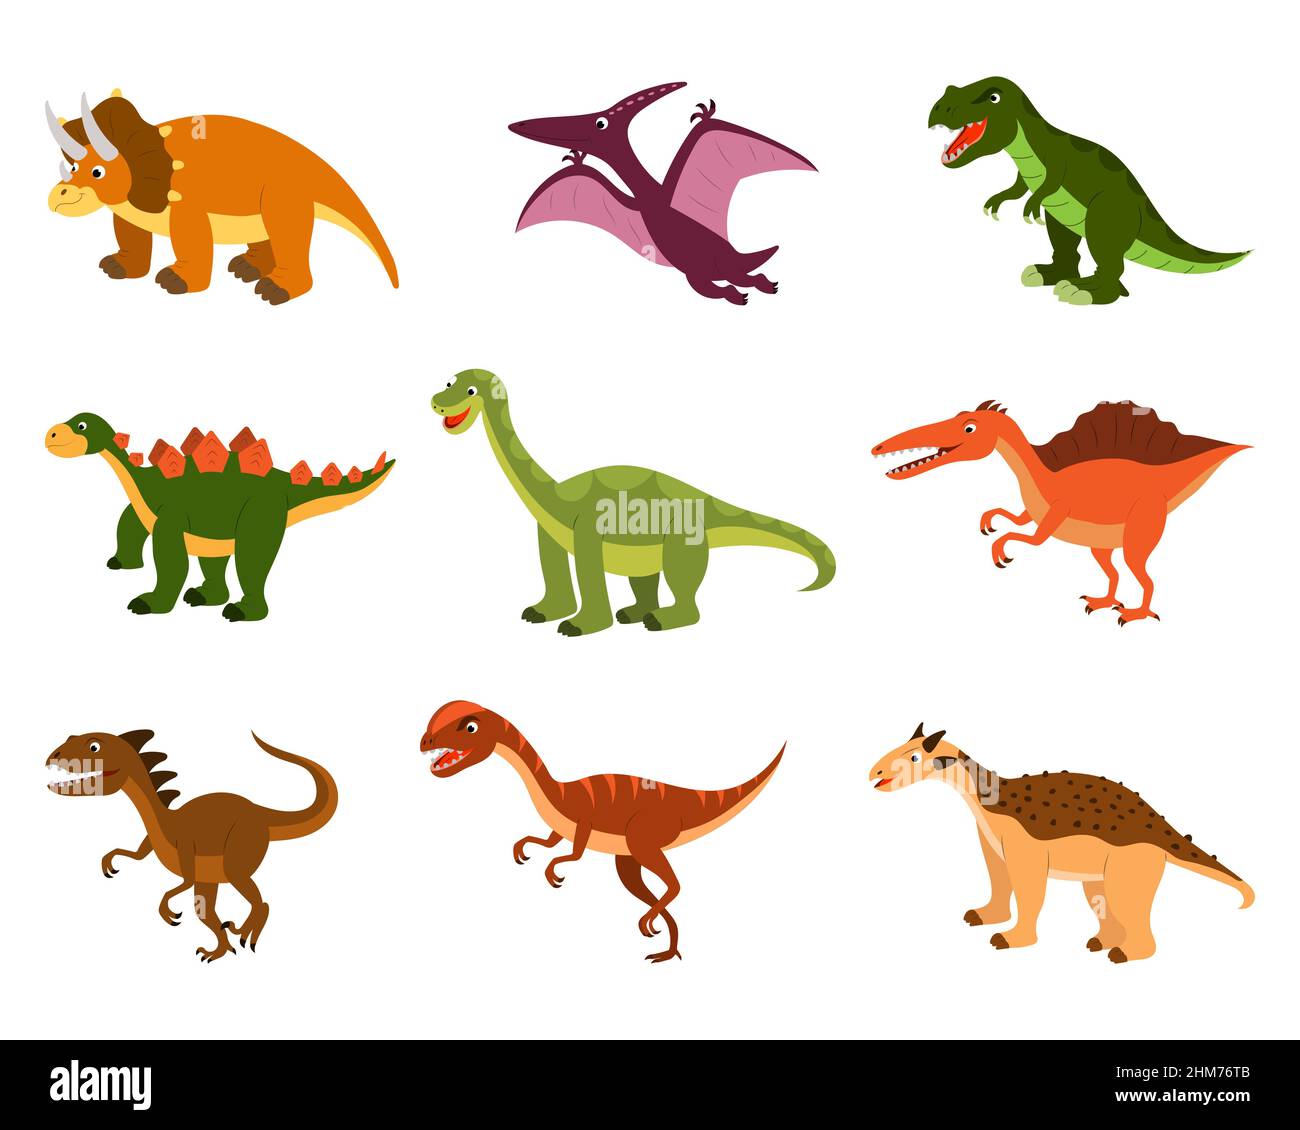 Eine Reihe von niedlichen Cartoon-Dinosaurier. vektor isoliert auf einem weißen Hintergrund. Stock Vektor